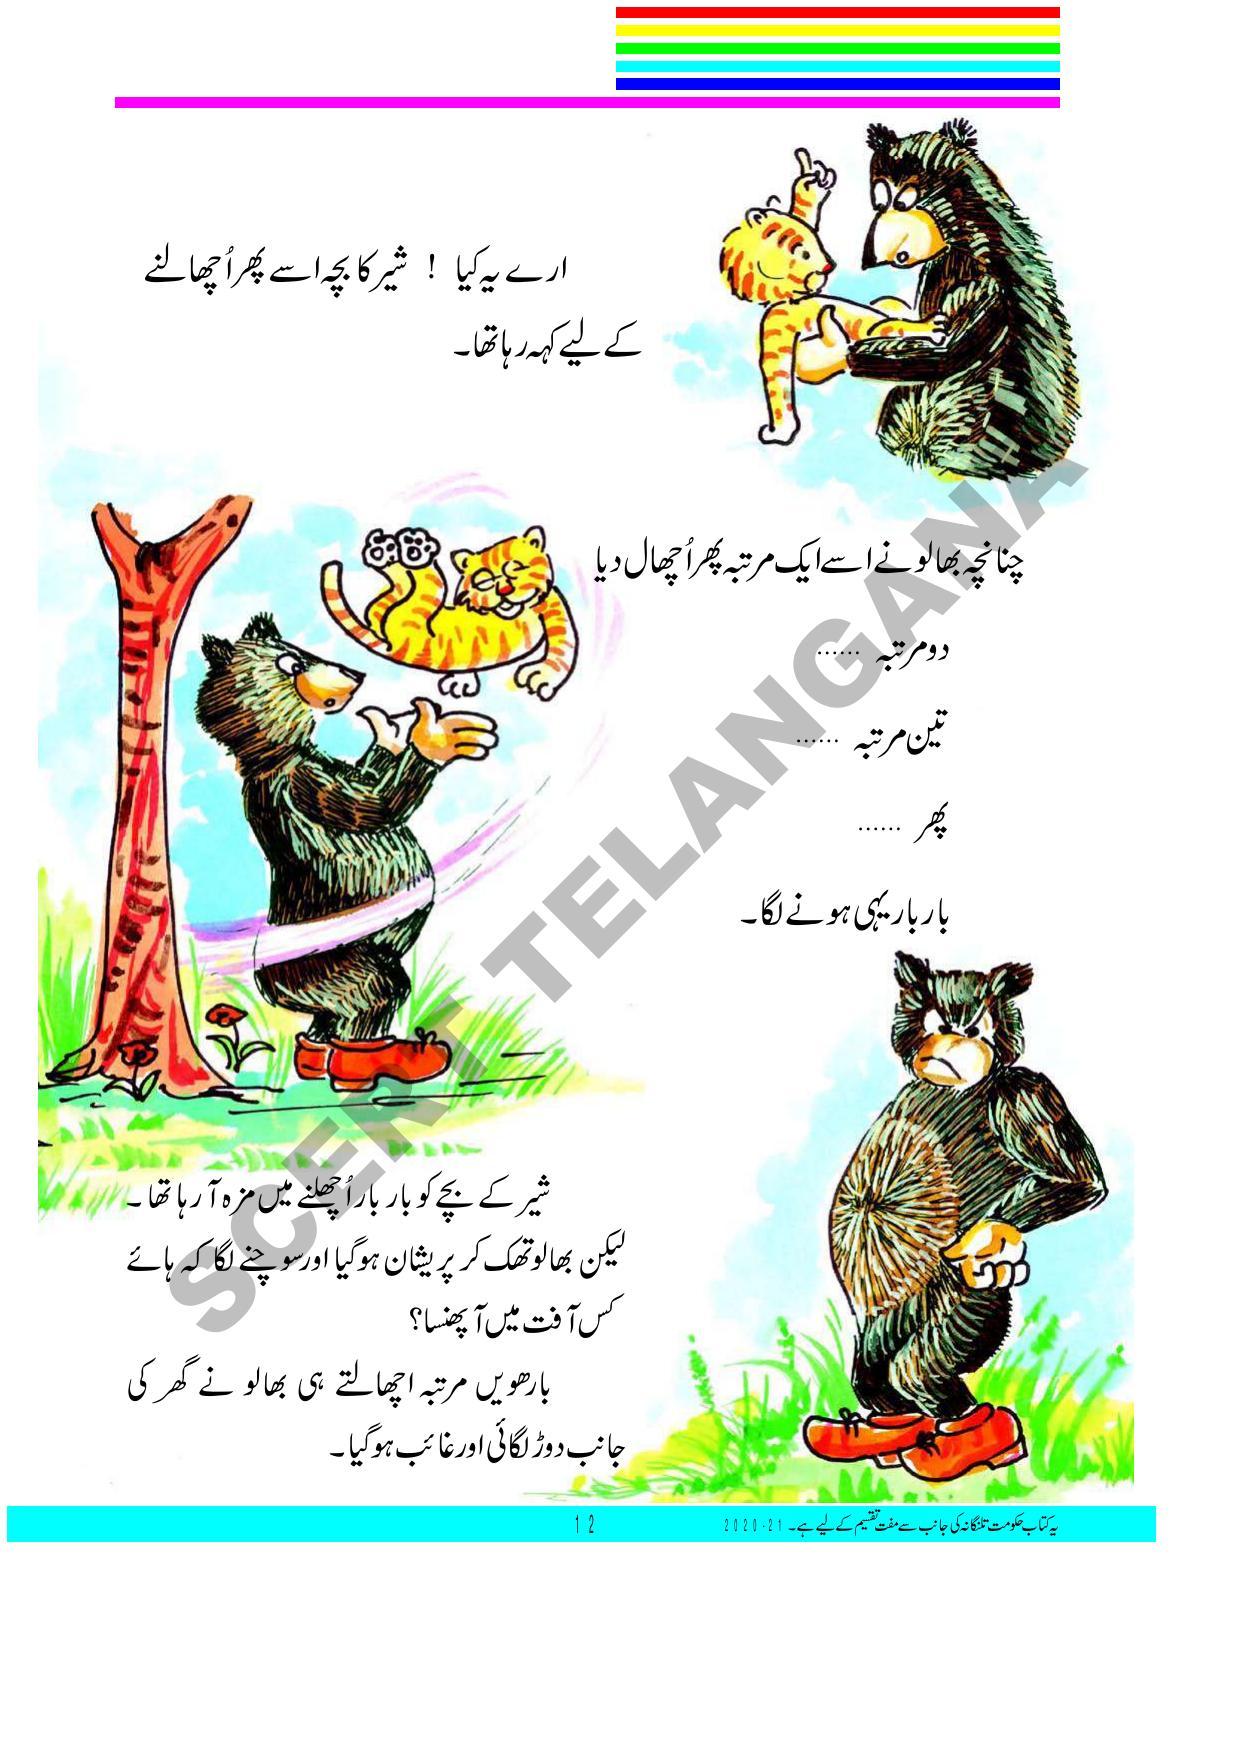 TS SCERT Class 3 First Language(Urdu Medium) Text Book - Page 26